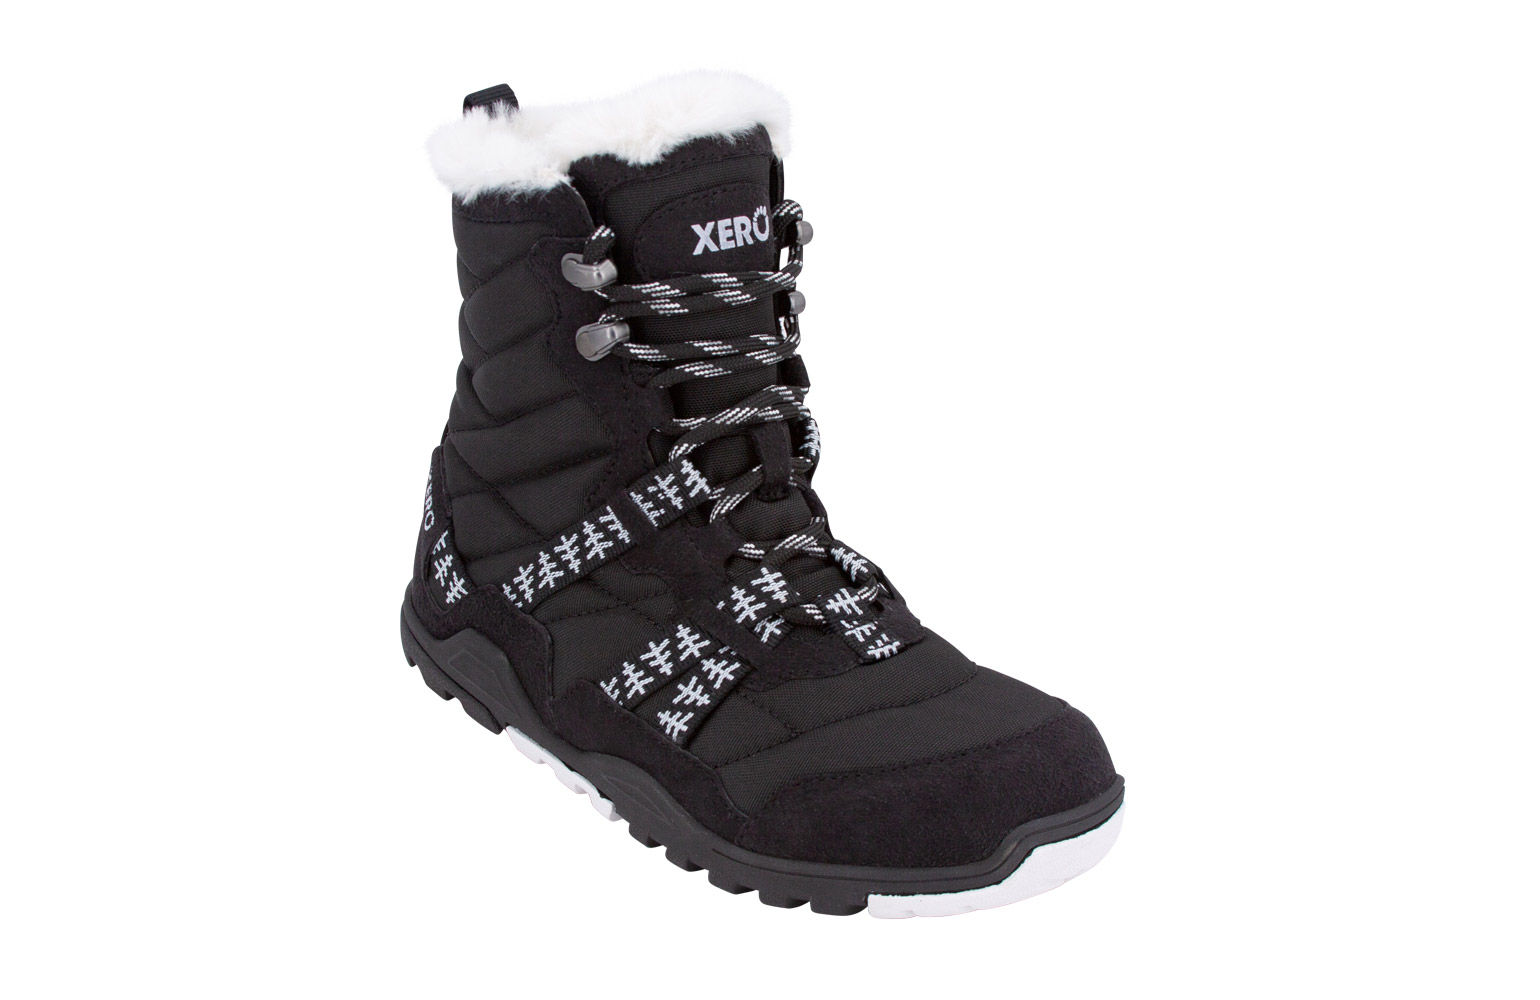 Xero Alpine Black naiste talvesaapad Täiskasvanute barefoot jalatsid - HellyK - Kvaliteetsed lasteriided, villariided, barefoot jalatsid